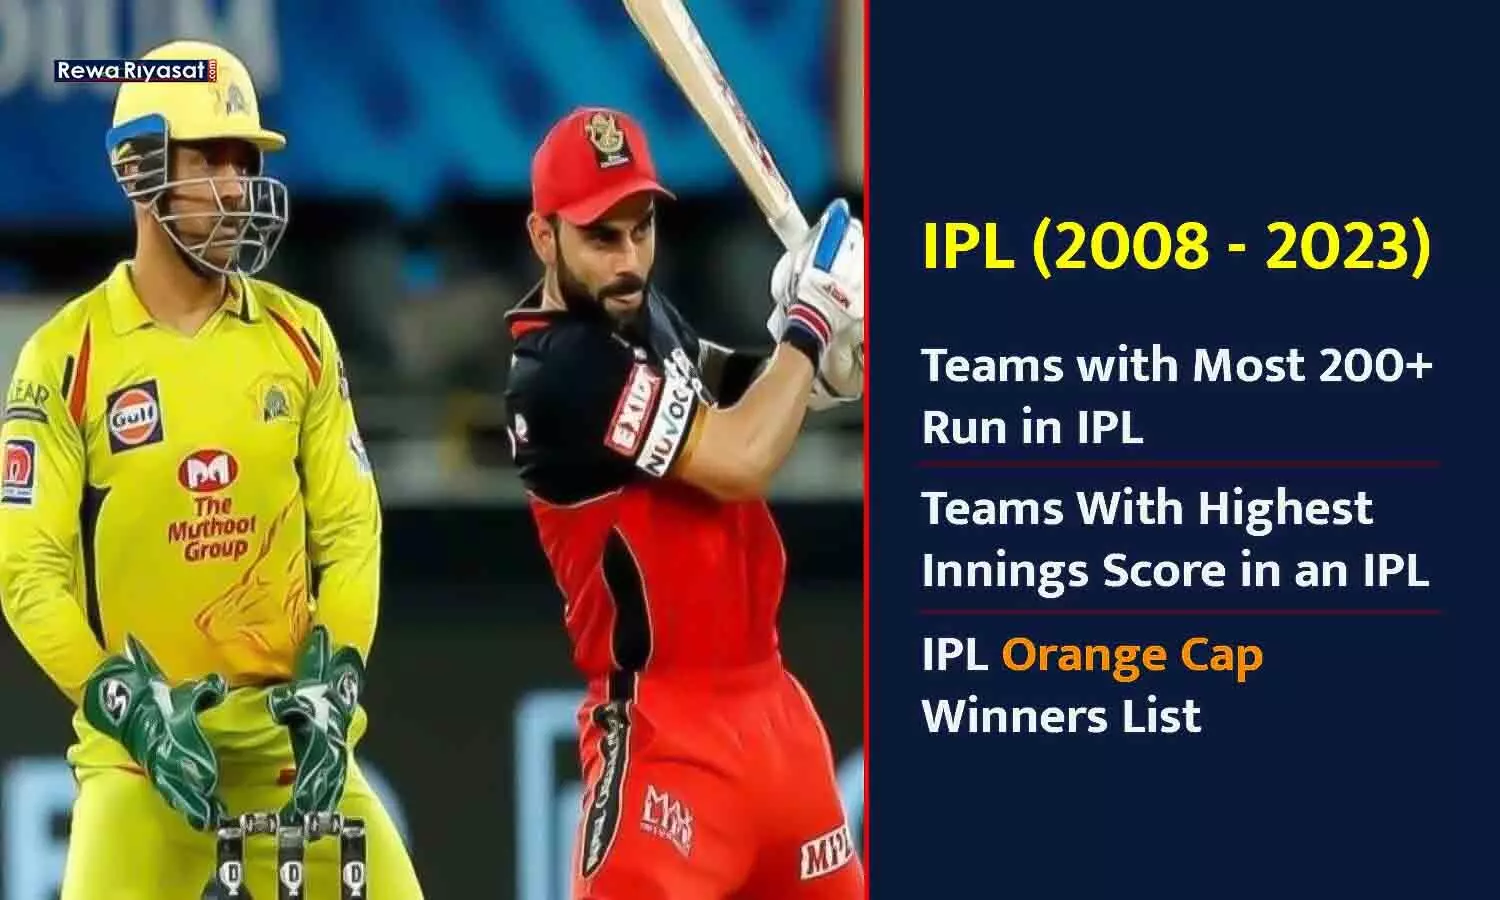 IPL में सबसे ज्यादा 200+ रन बनाने वाली टीमें (2008 - 2023)